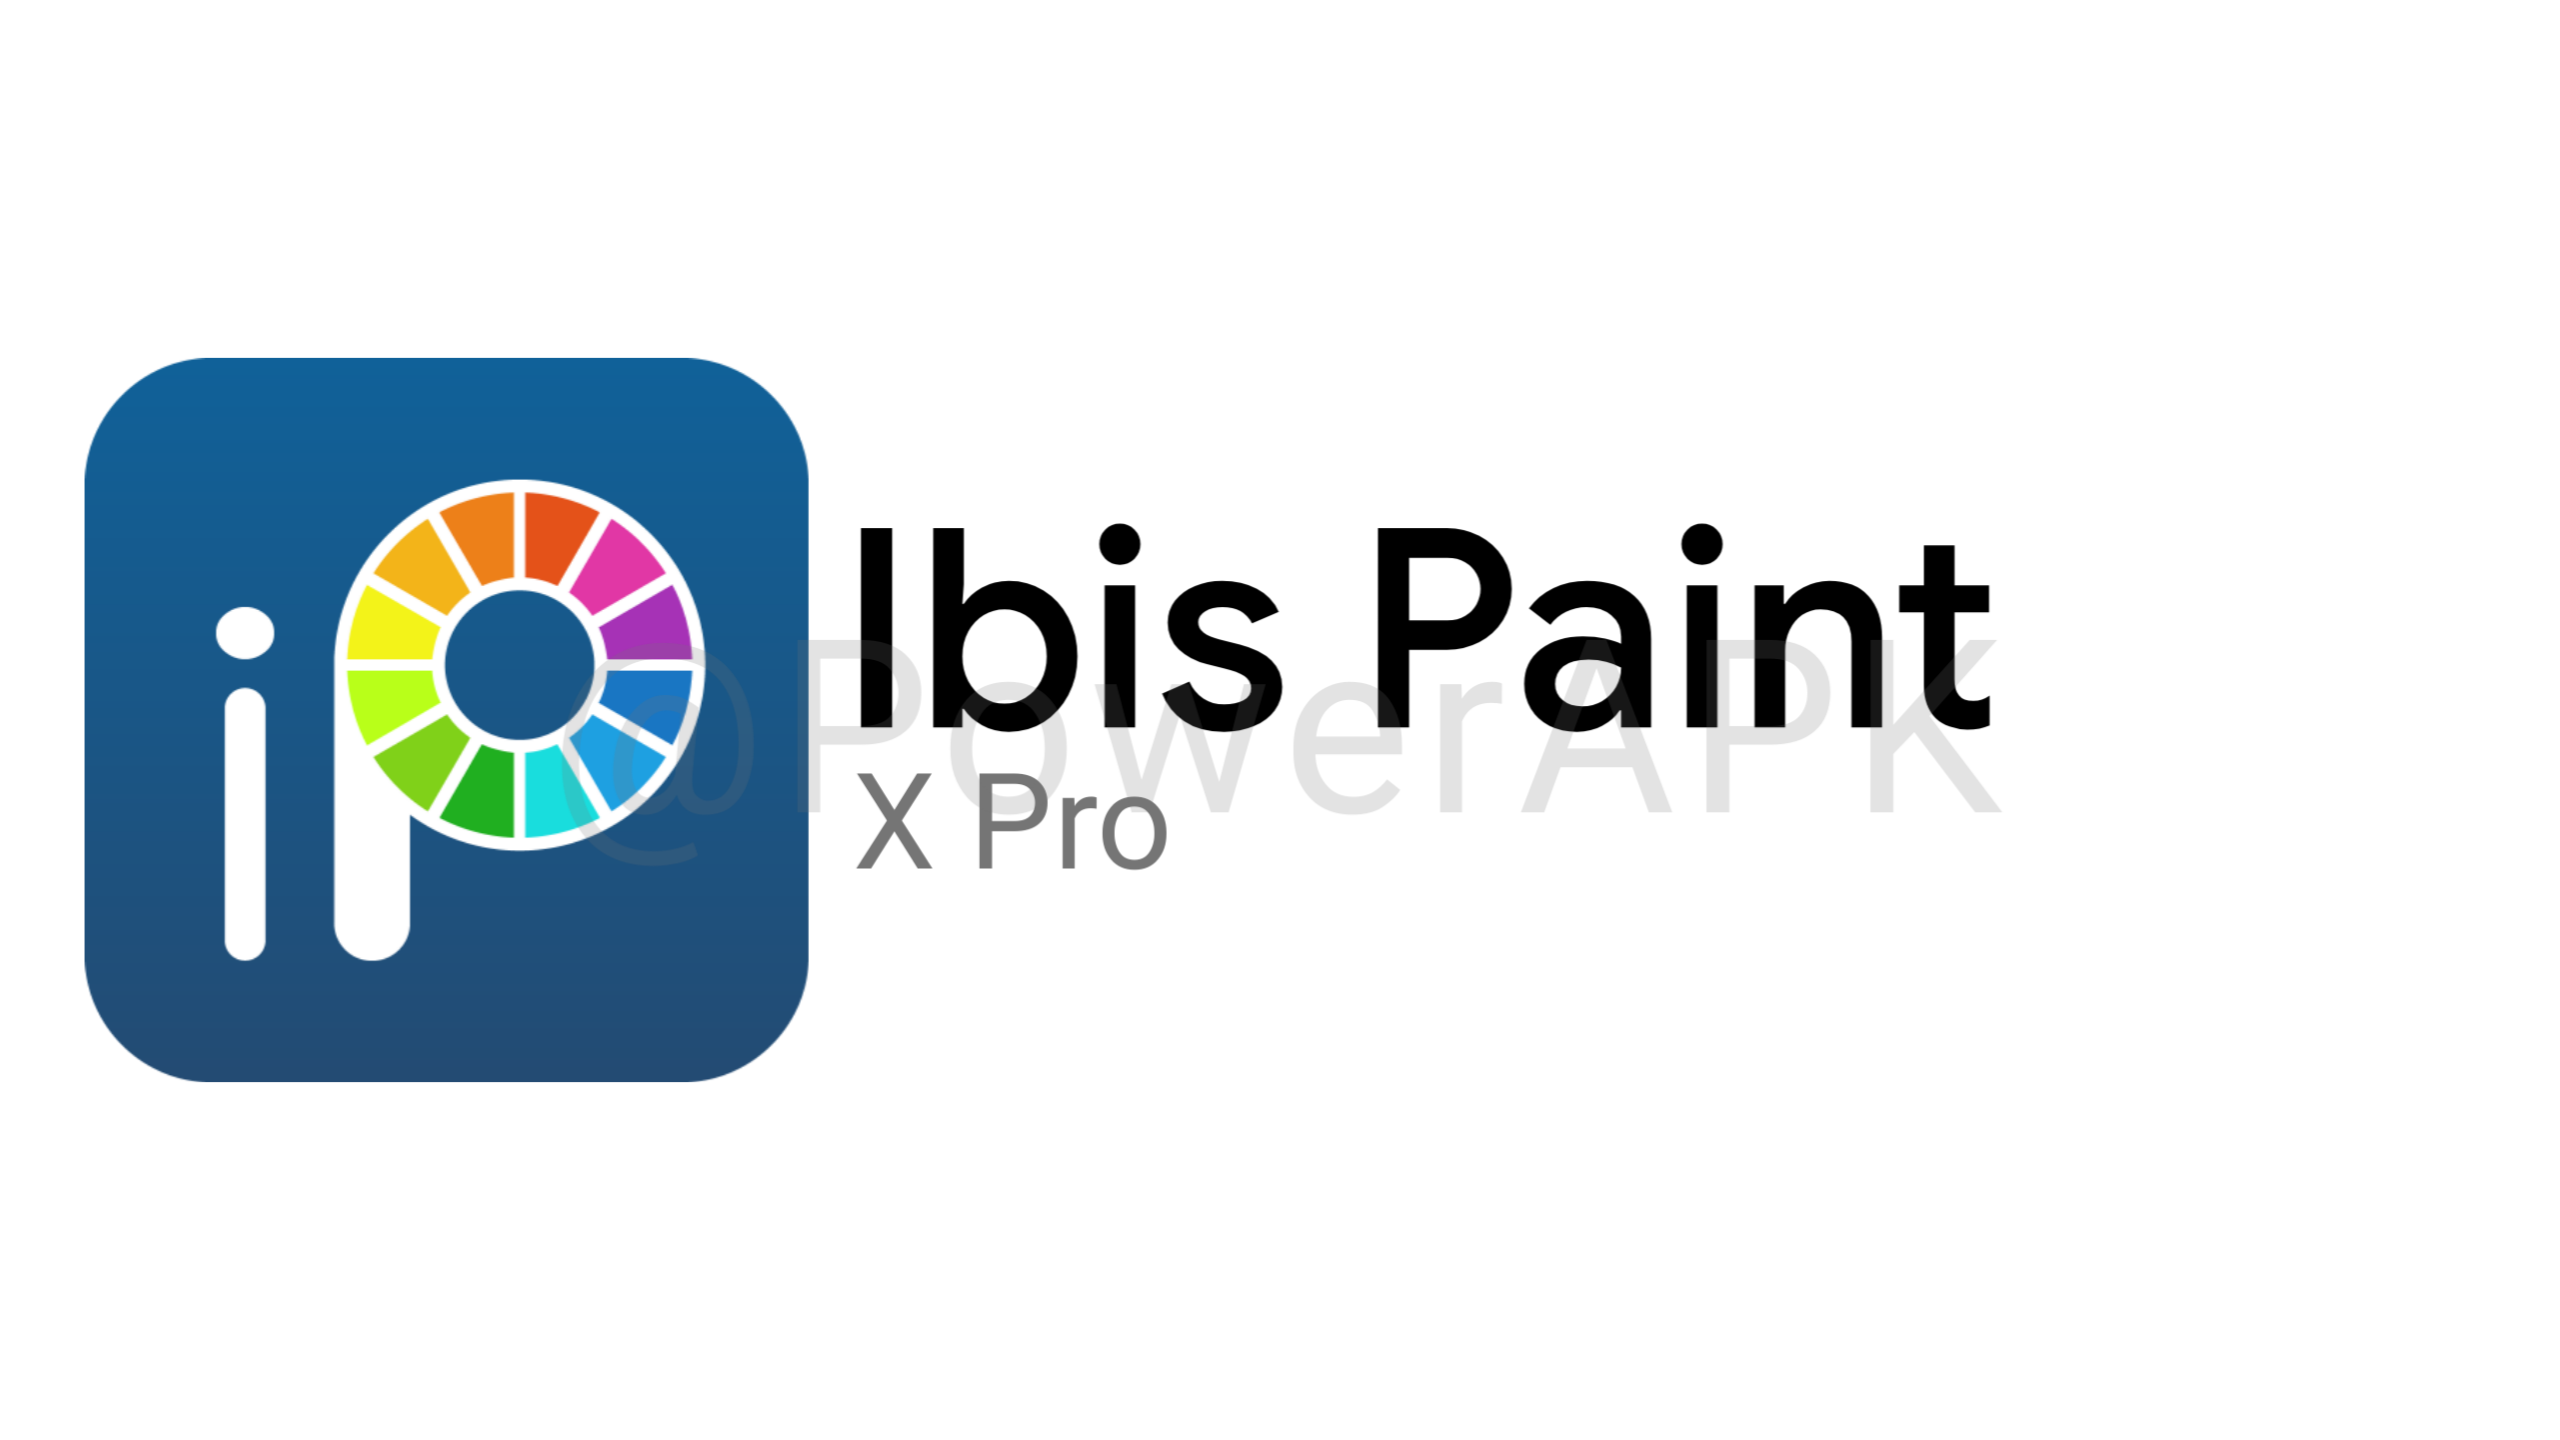 Ibis paint черный. Фотографии приложения без Paint x. Ибис пейнт Икс в виде человека.